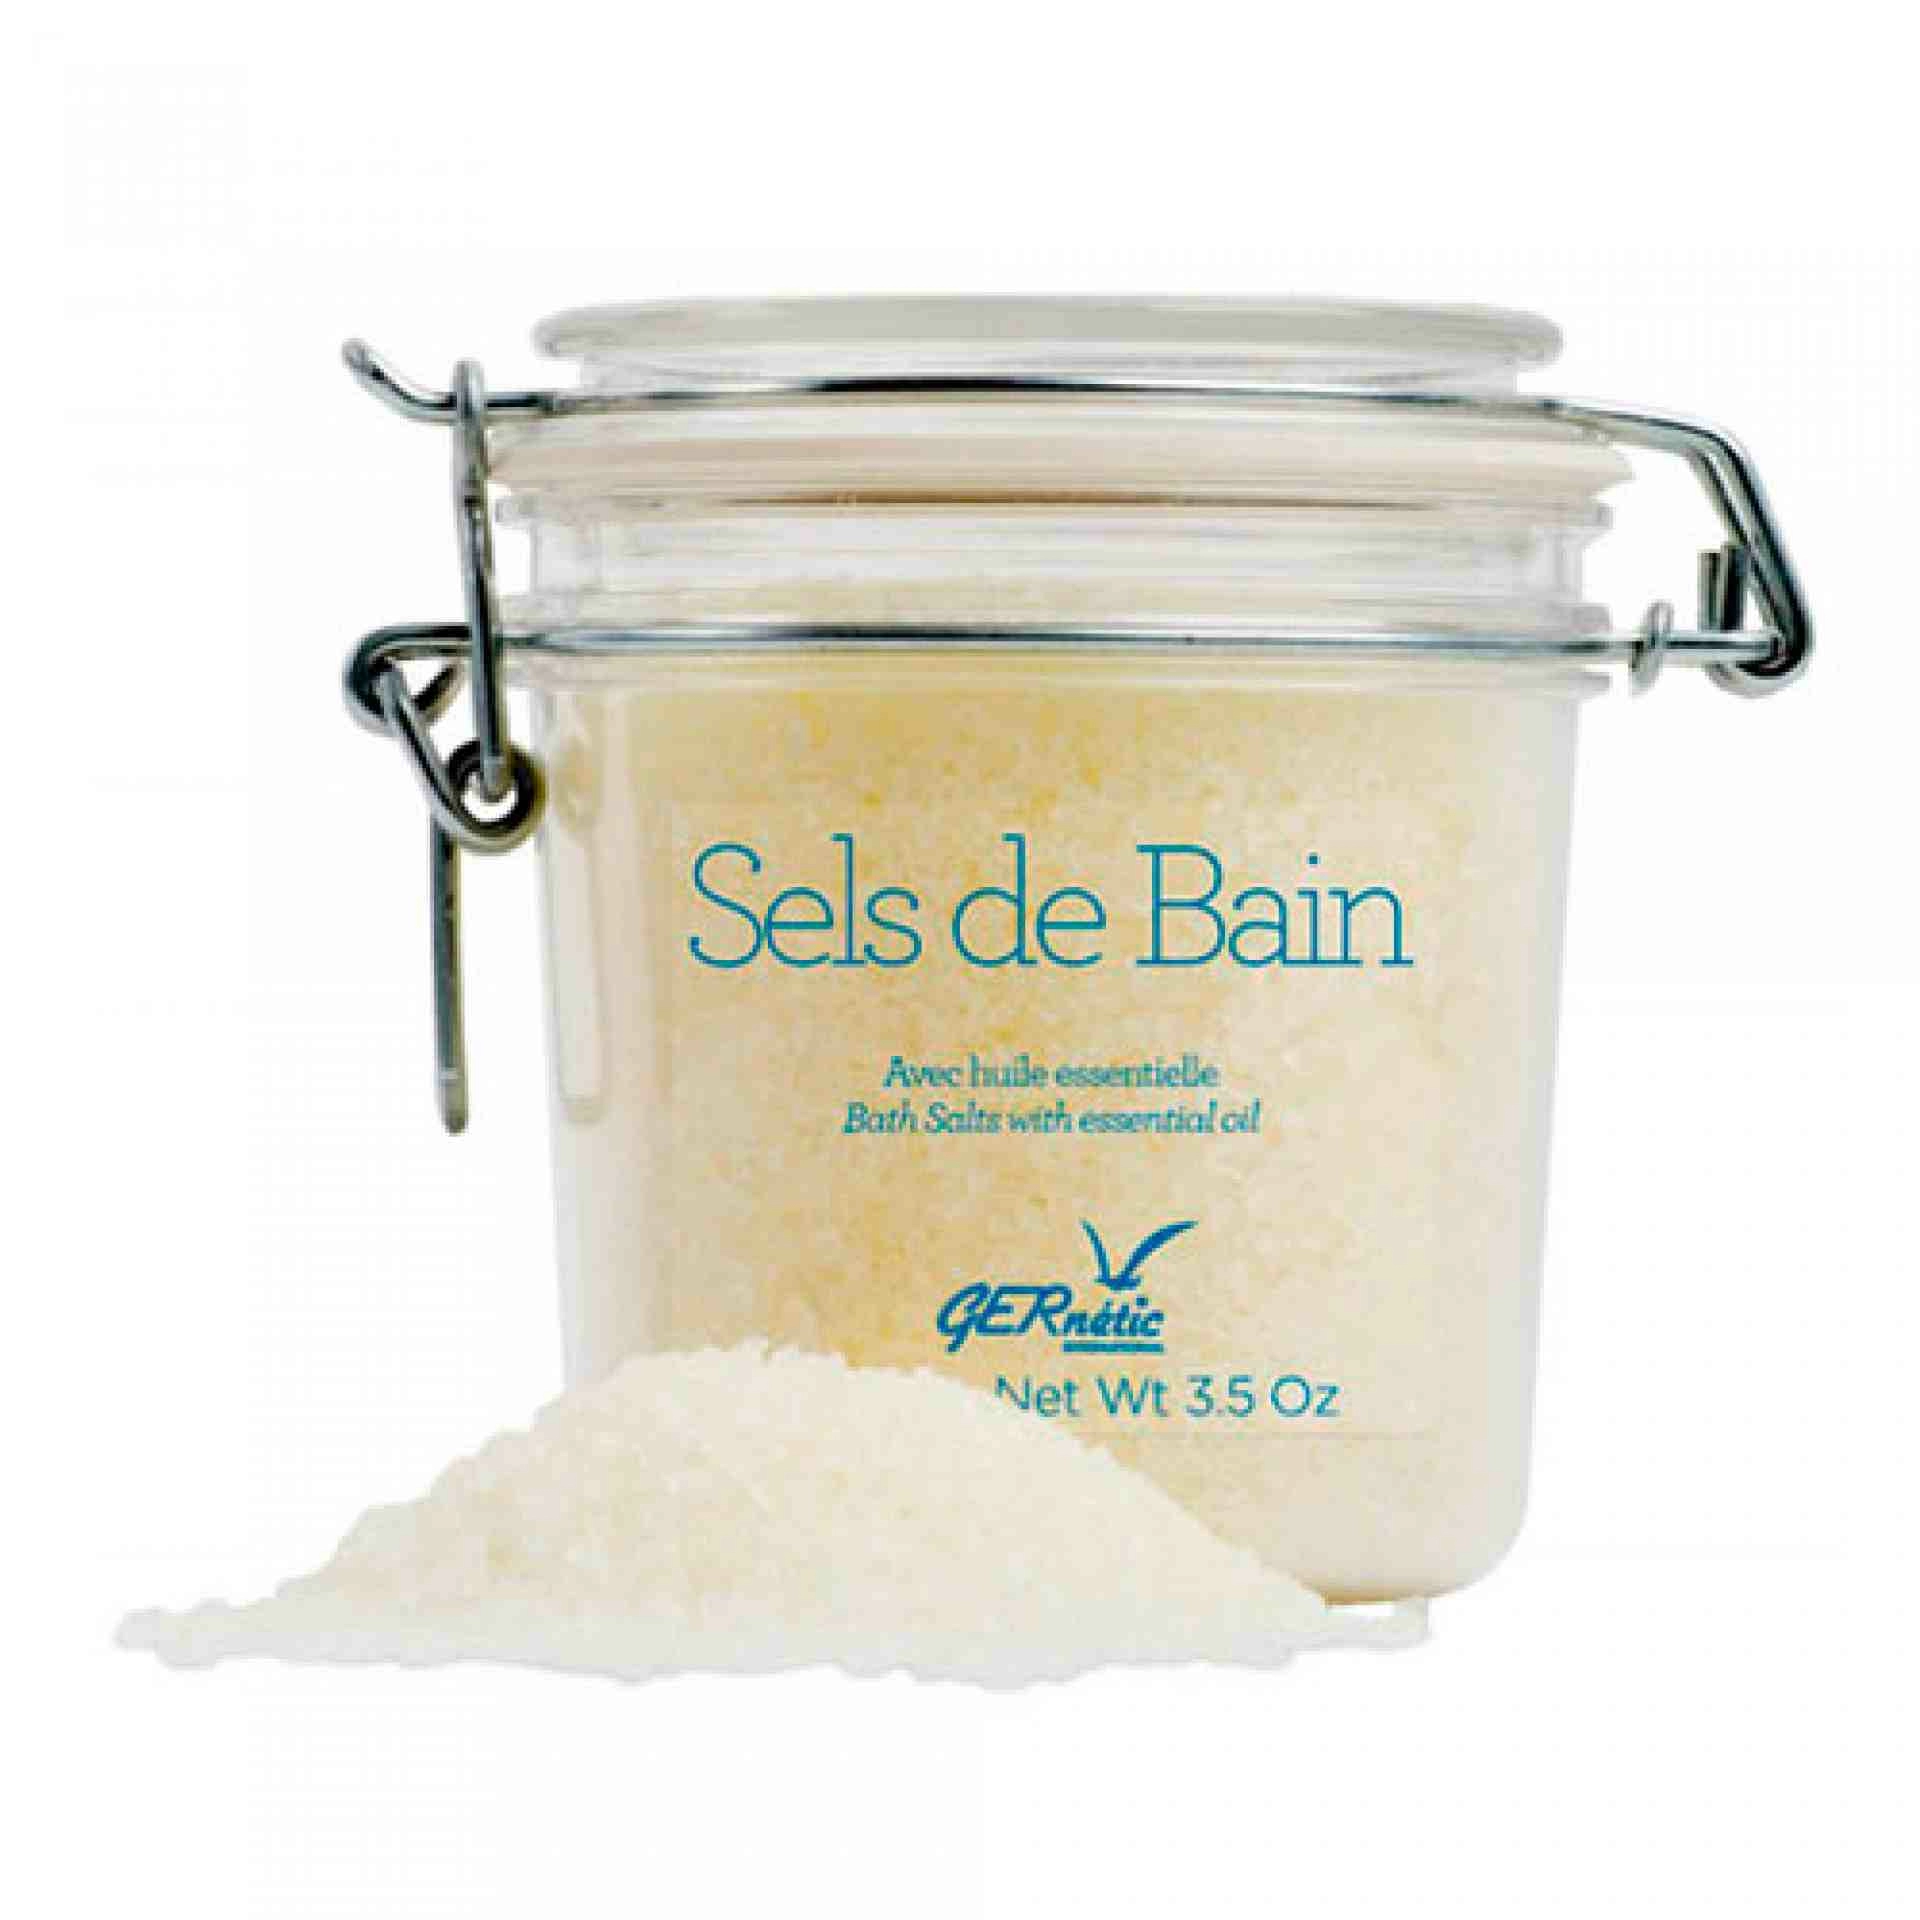 Sels de Bain | Sales marinas 400g - Marinos & Spa - Gernétic ®